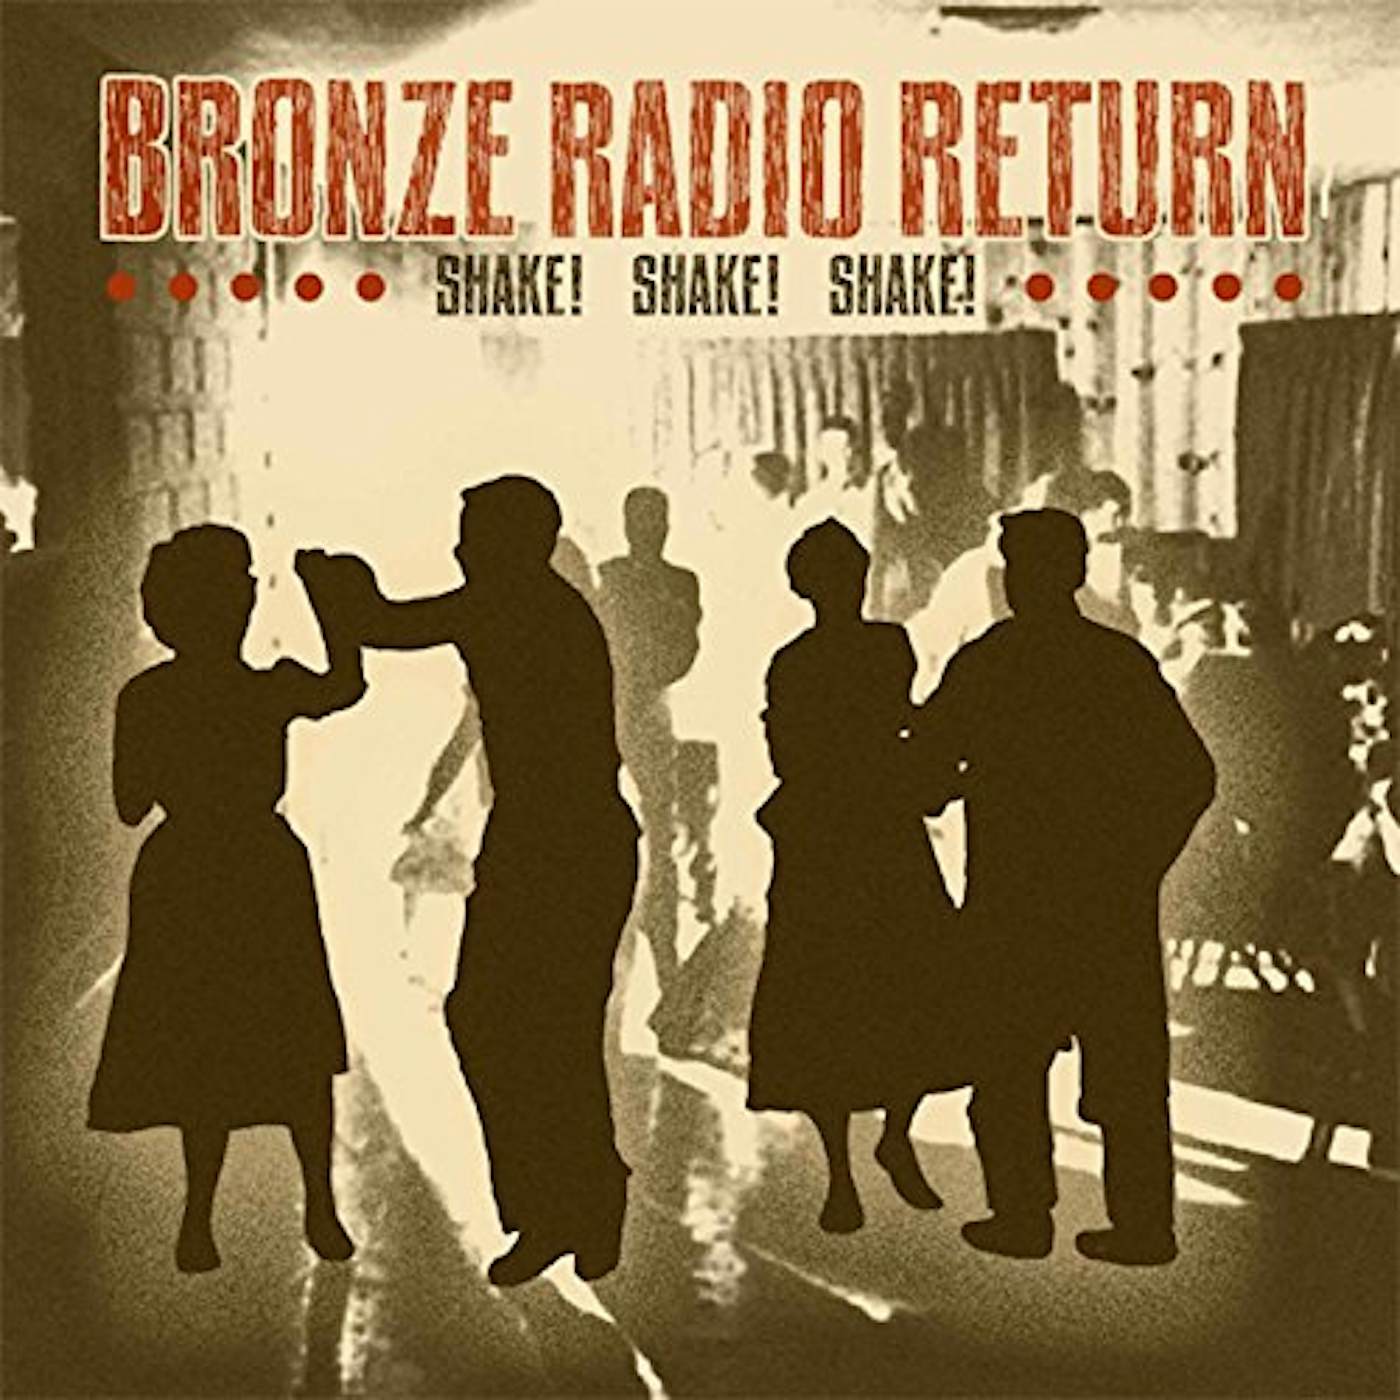 Bronze Radio Return SHAKE SHAKE SHAKE Vinyl Record